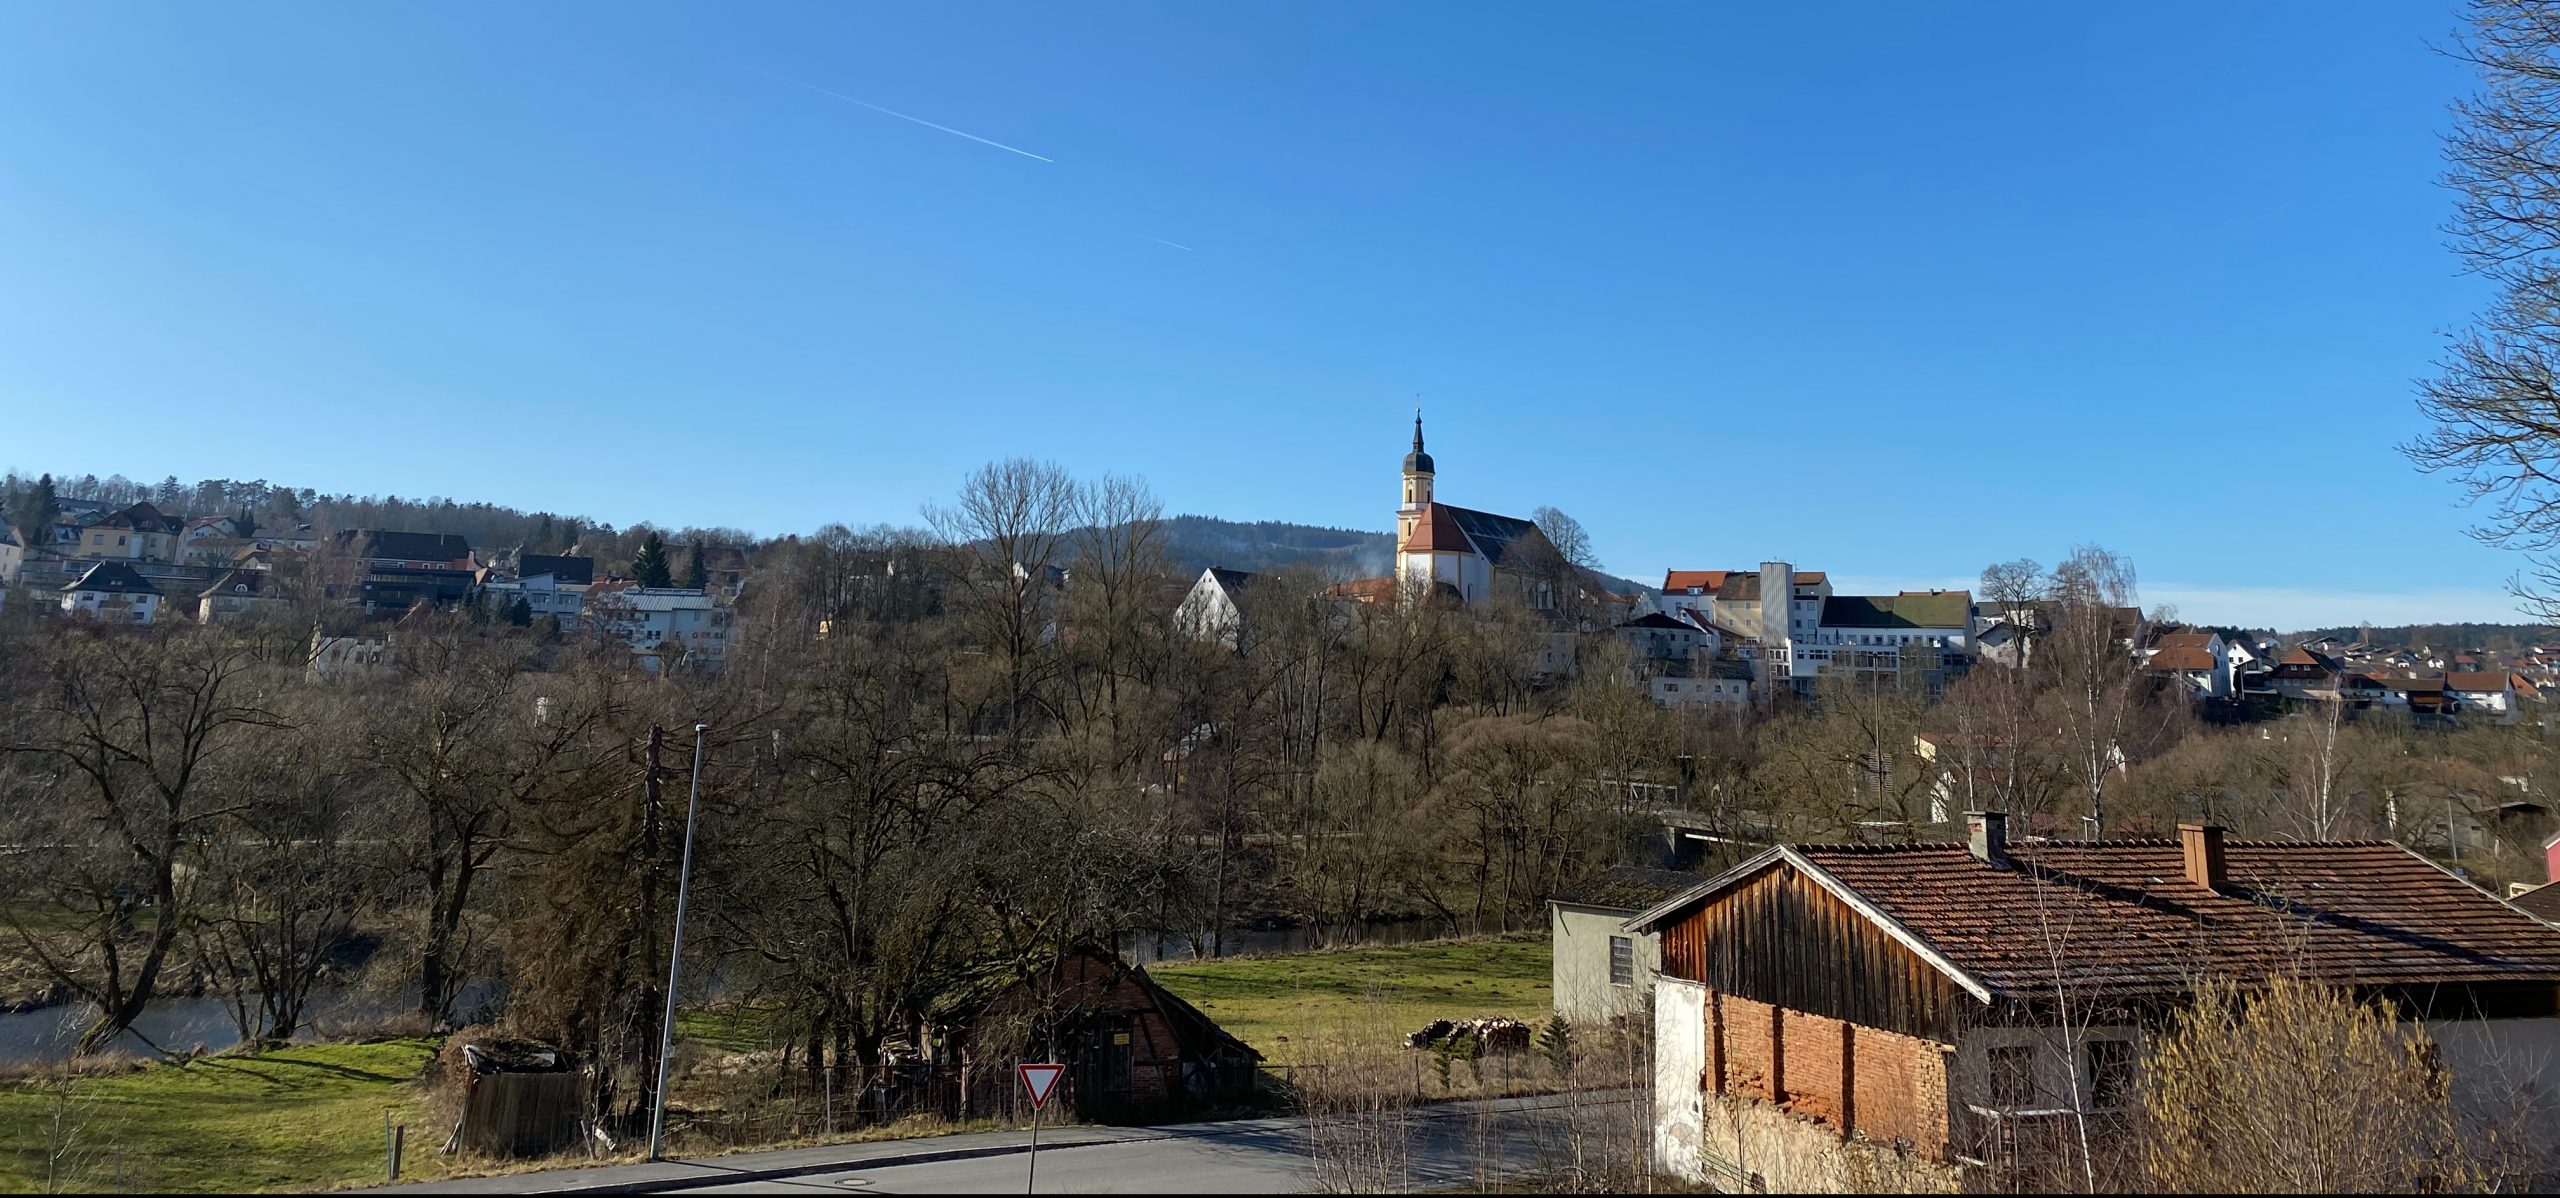 Foto: Viechtach - Sicht auf die Kirche St. Augustin